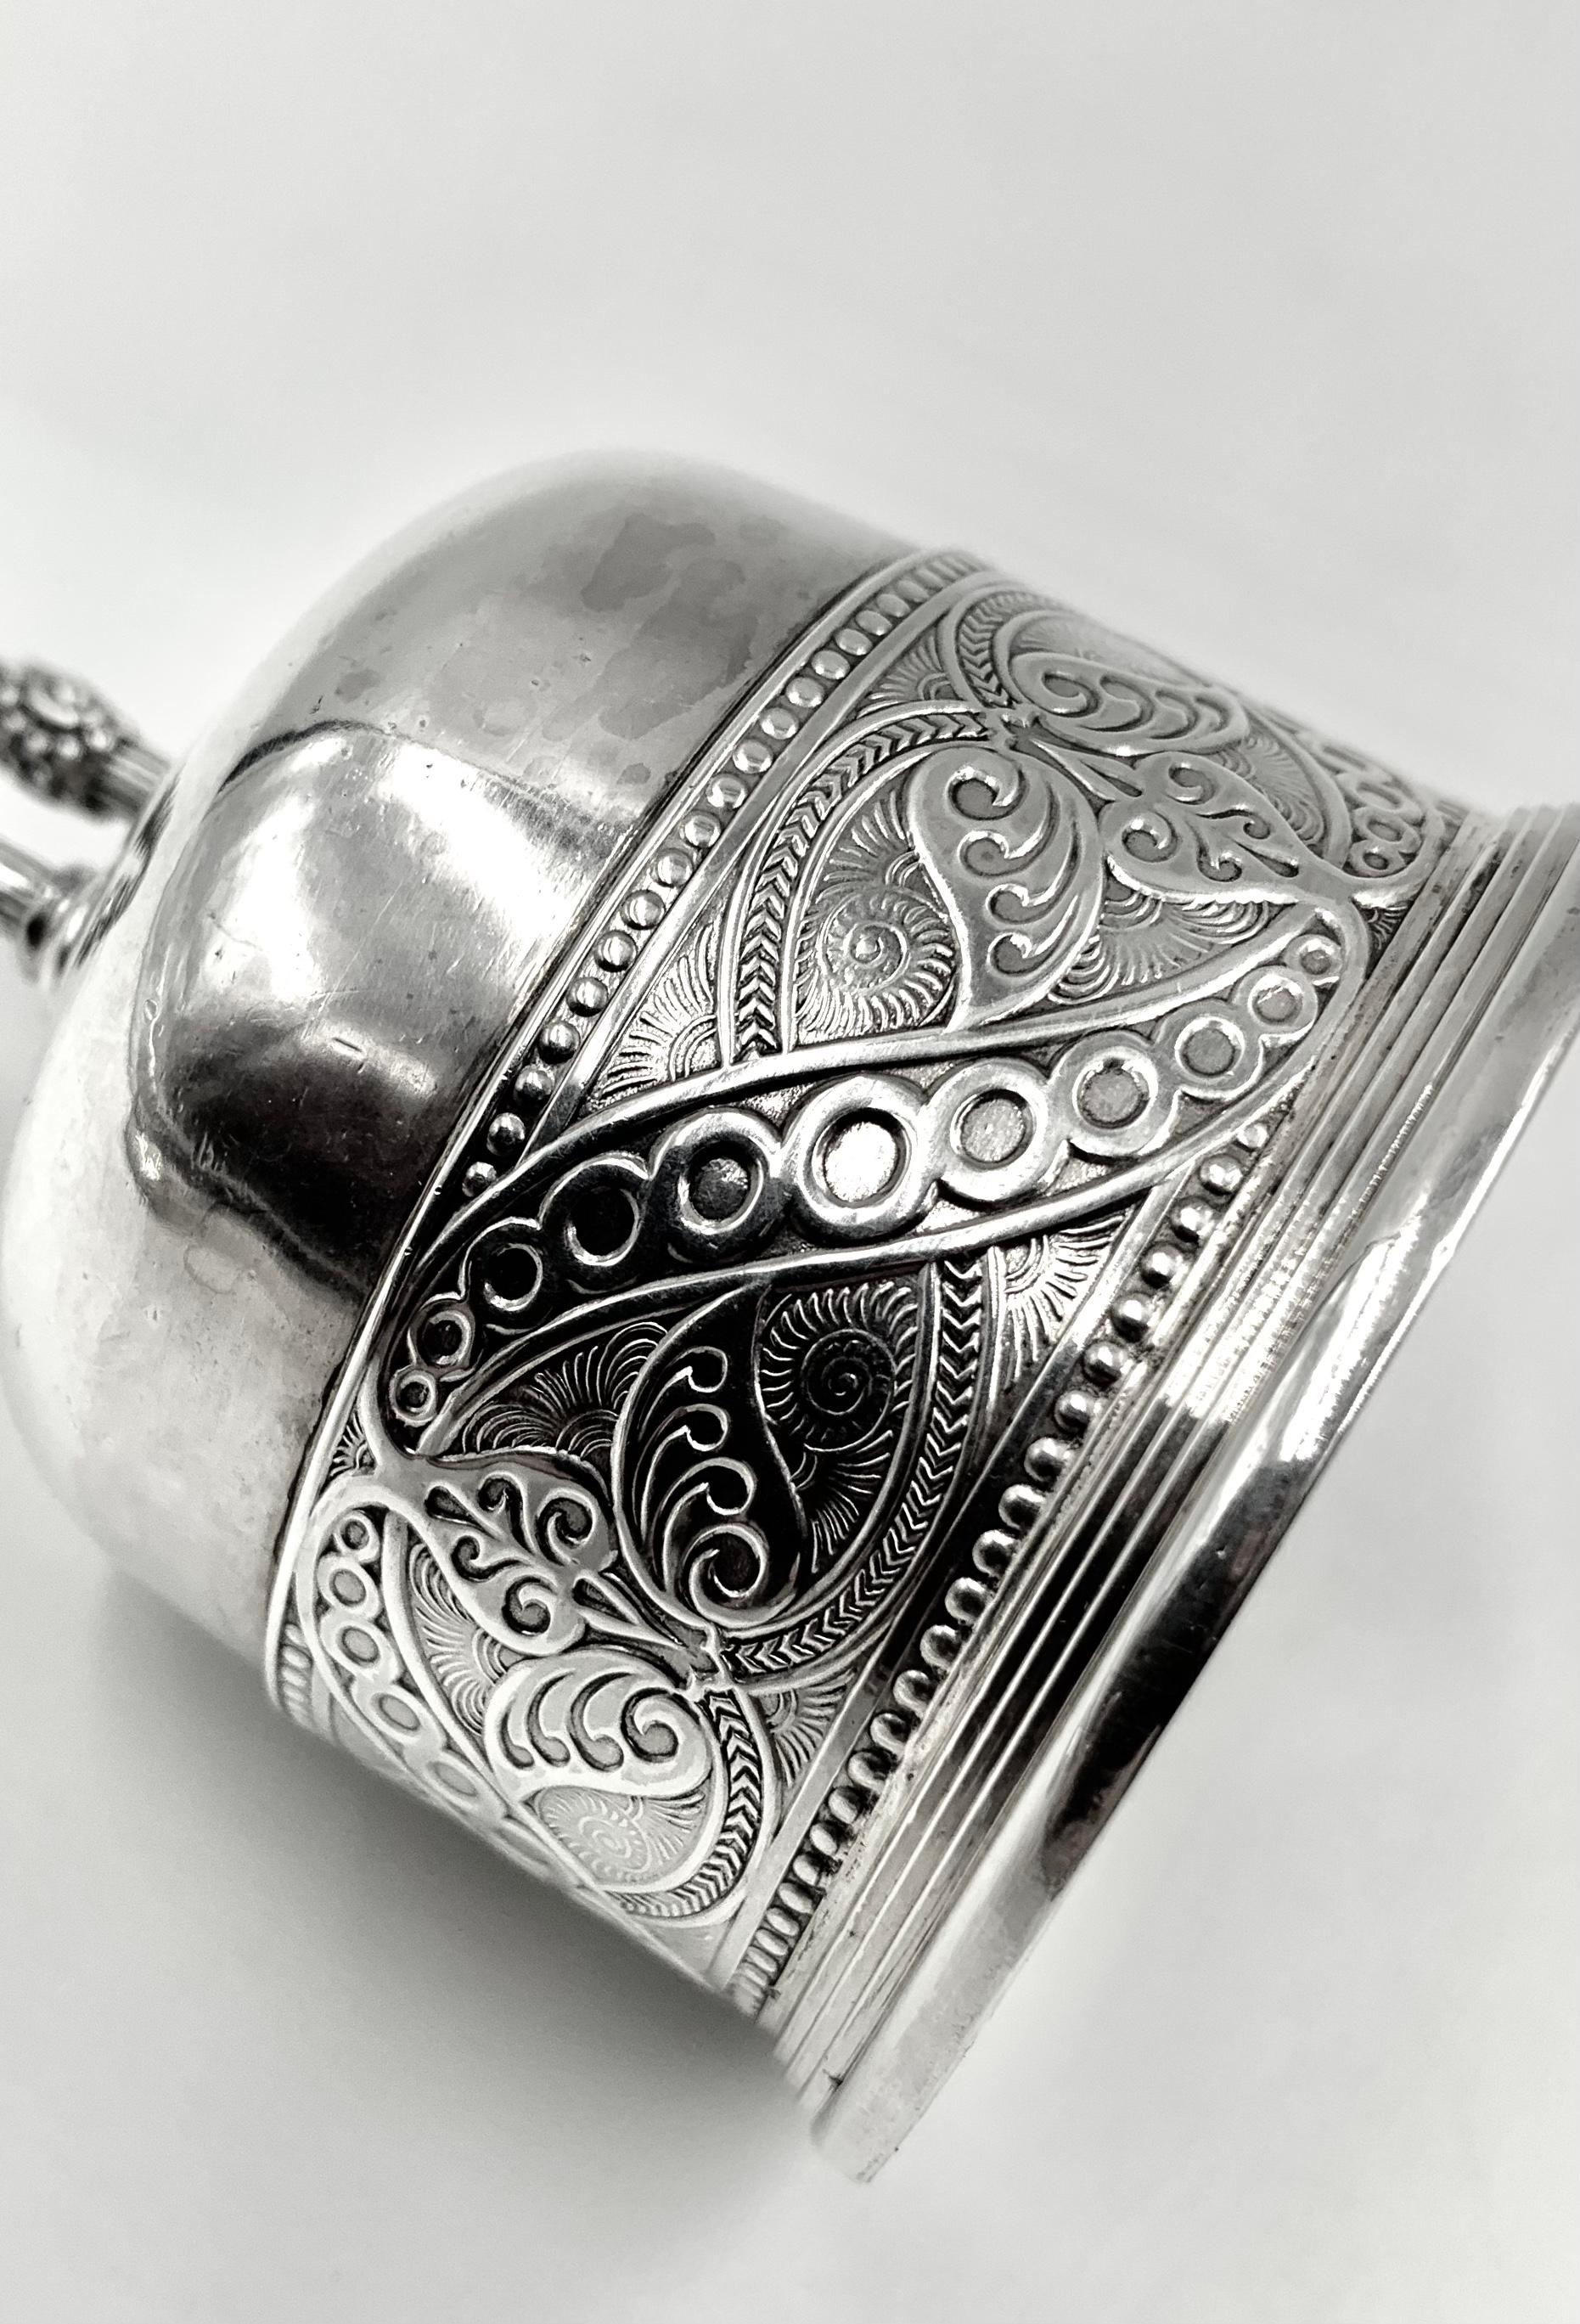 Rare cloche de table Tiffany & Co. en argent sterling d'époque Edward Moore, 1873-1891, sur pied.
La cloche est dotée d'une haute poignée en forme de U inversé aux détails exceptionnels - un motif cannelé entrecoupé de cinq doubles bandes et de